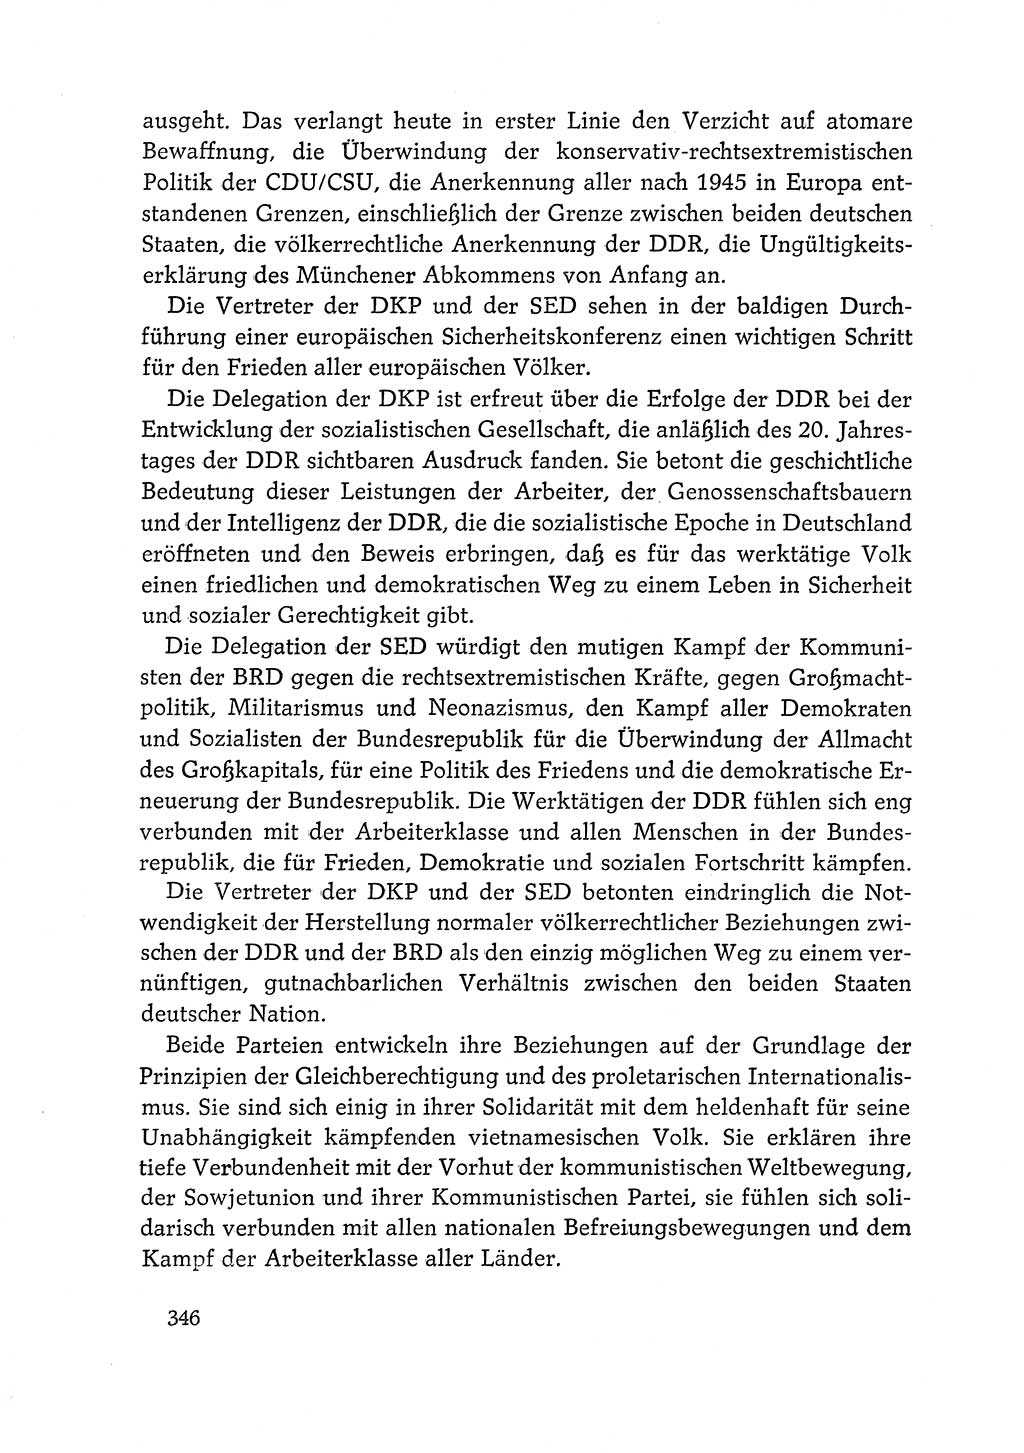 Dokumente der Sozialistischen Einheitspartei Deutschlands (SED) [Deutsche Demokratische Republik (DDR)] 1968-1969, Seite 346 (Dok. SED DDR 1968-1969, S. 346)